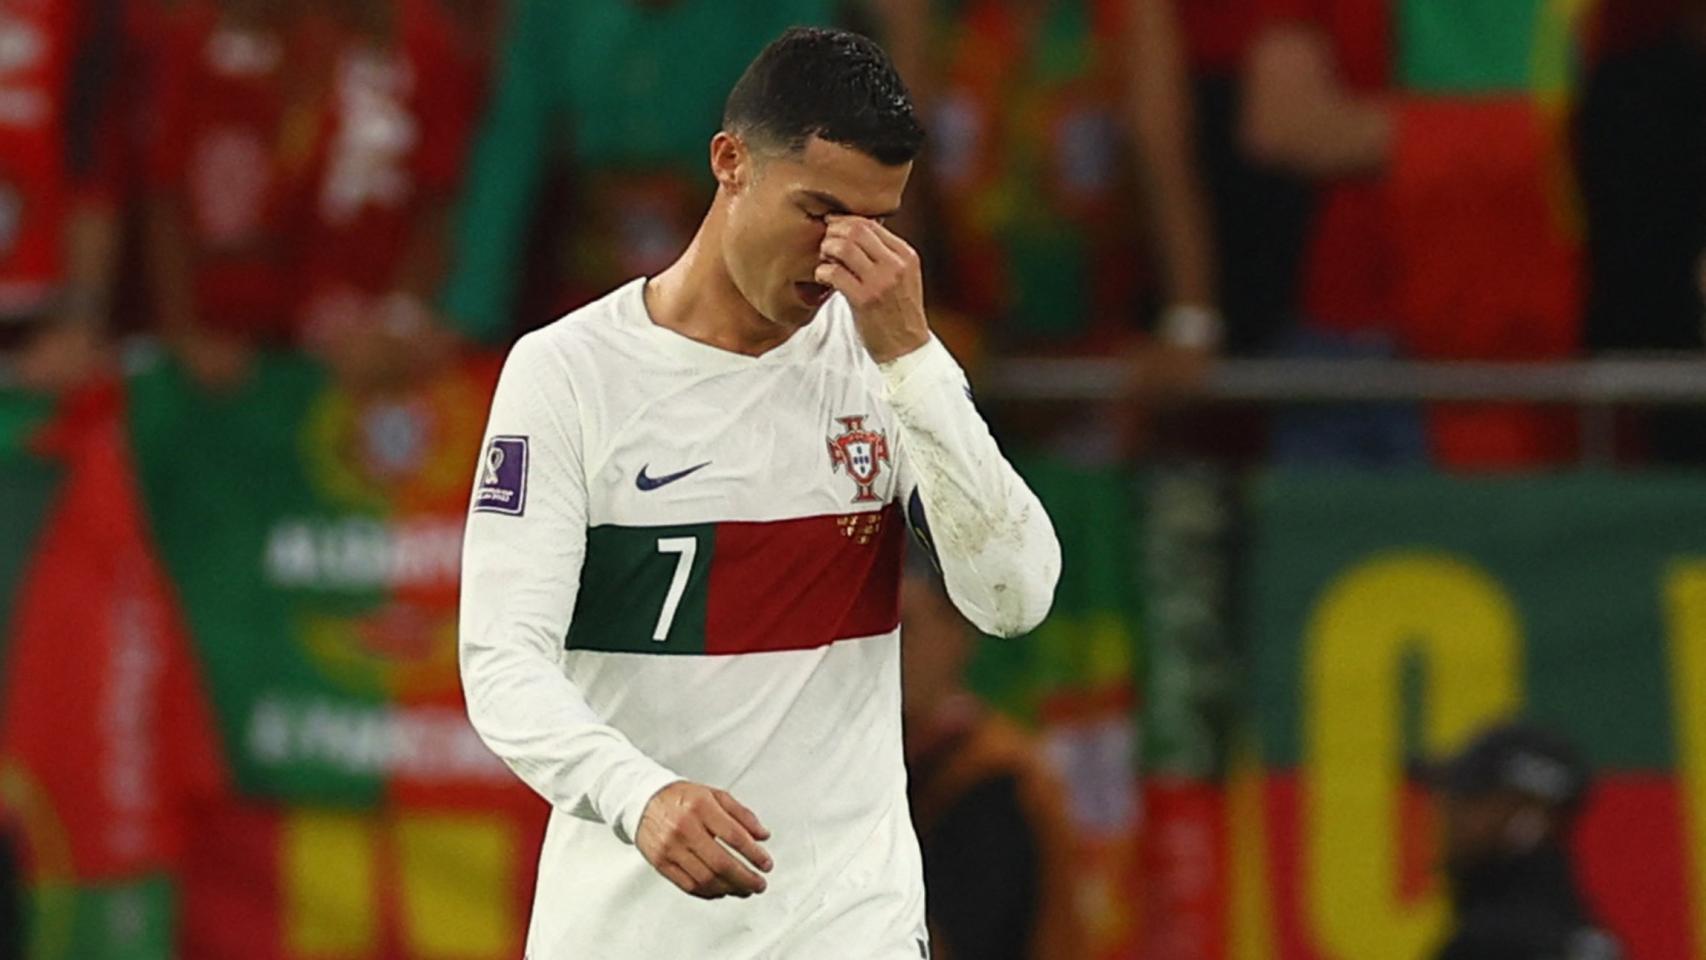 Marruecos 1-0 Portugal, el Mundial de 2022 | Resultado, narración y goleadores del partido